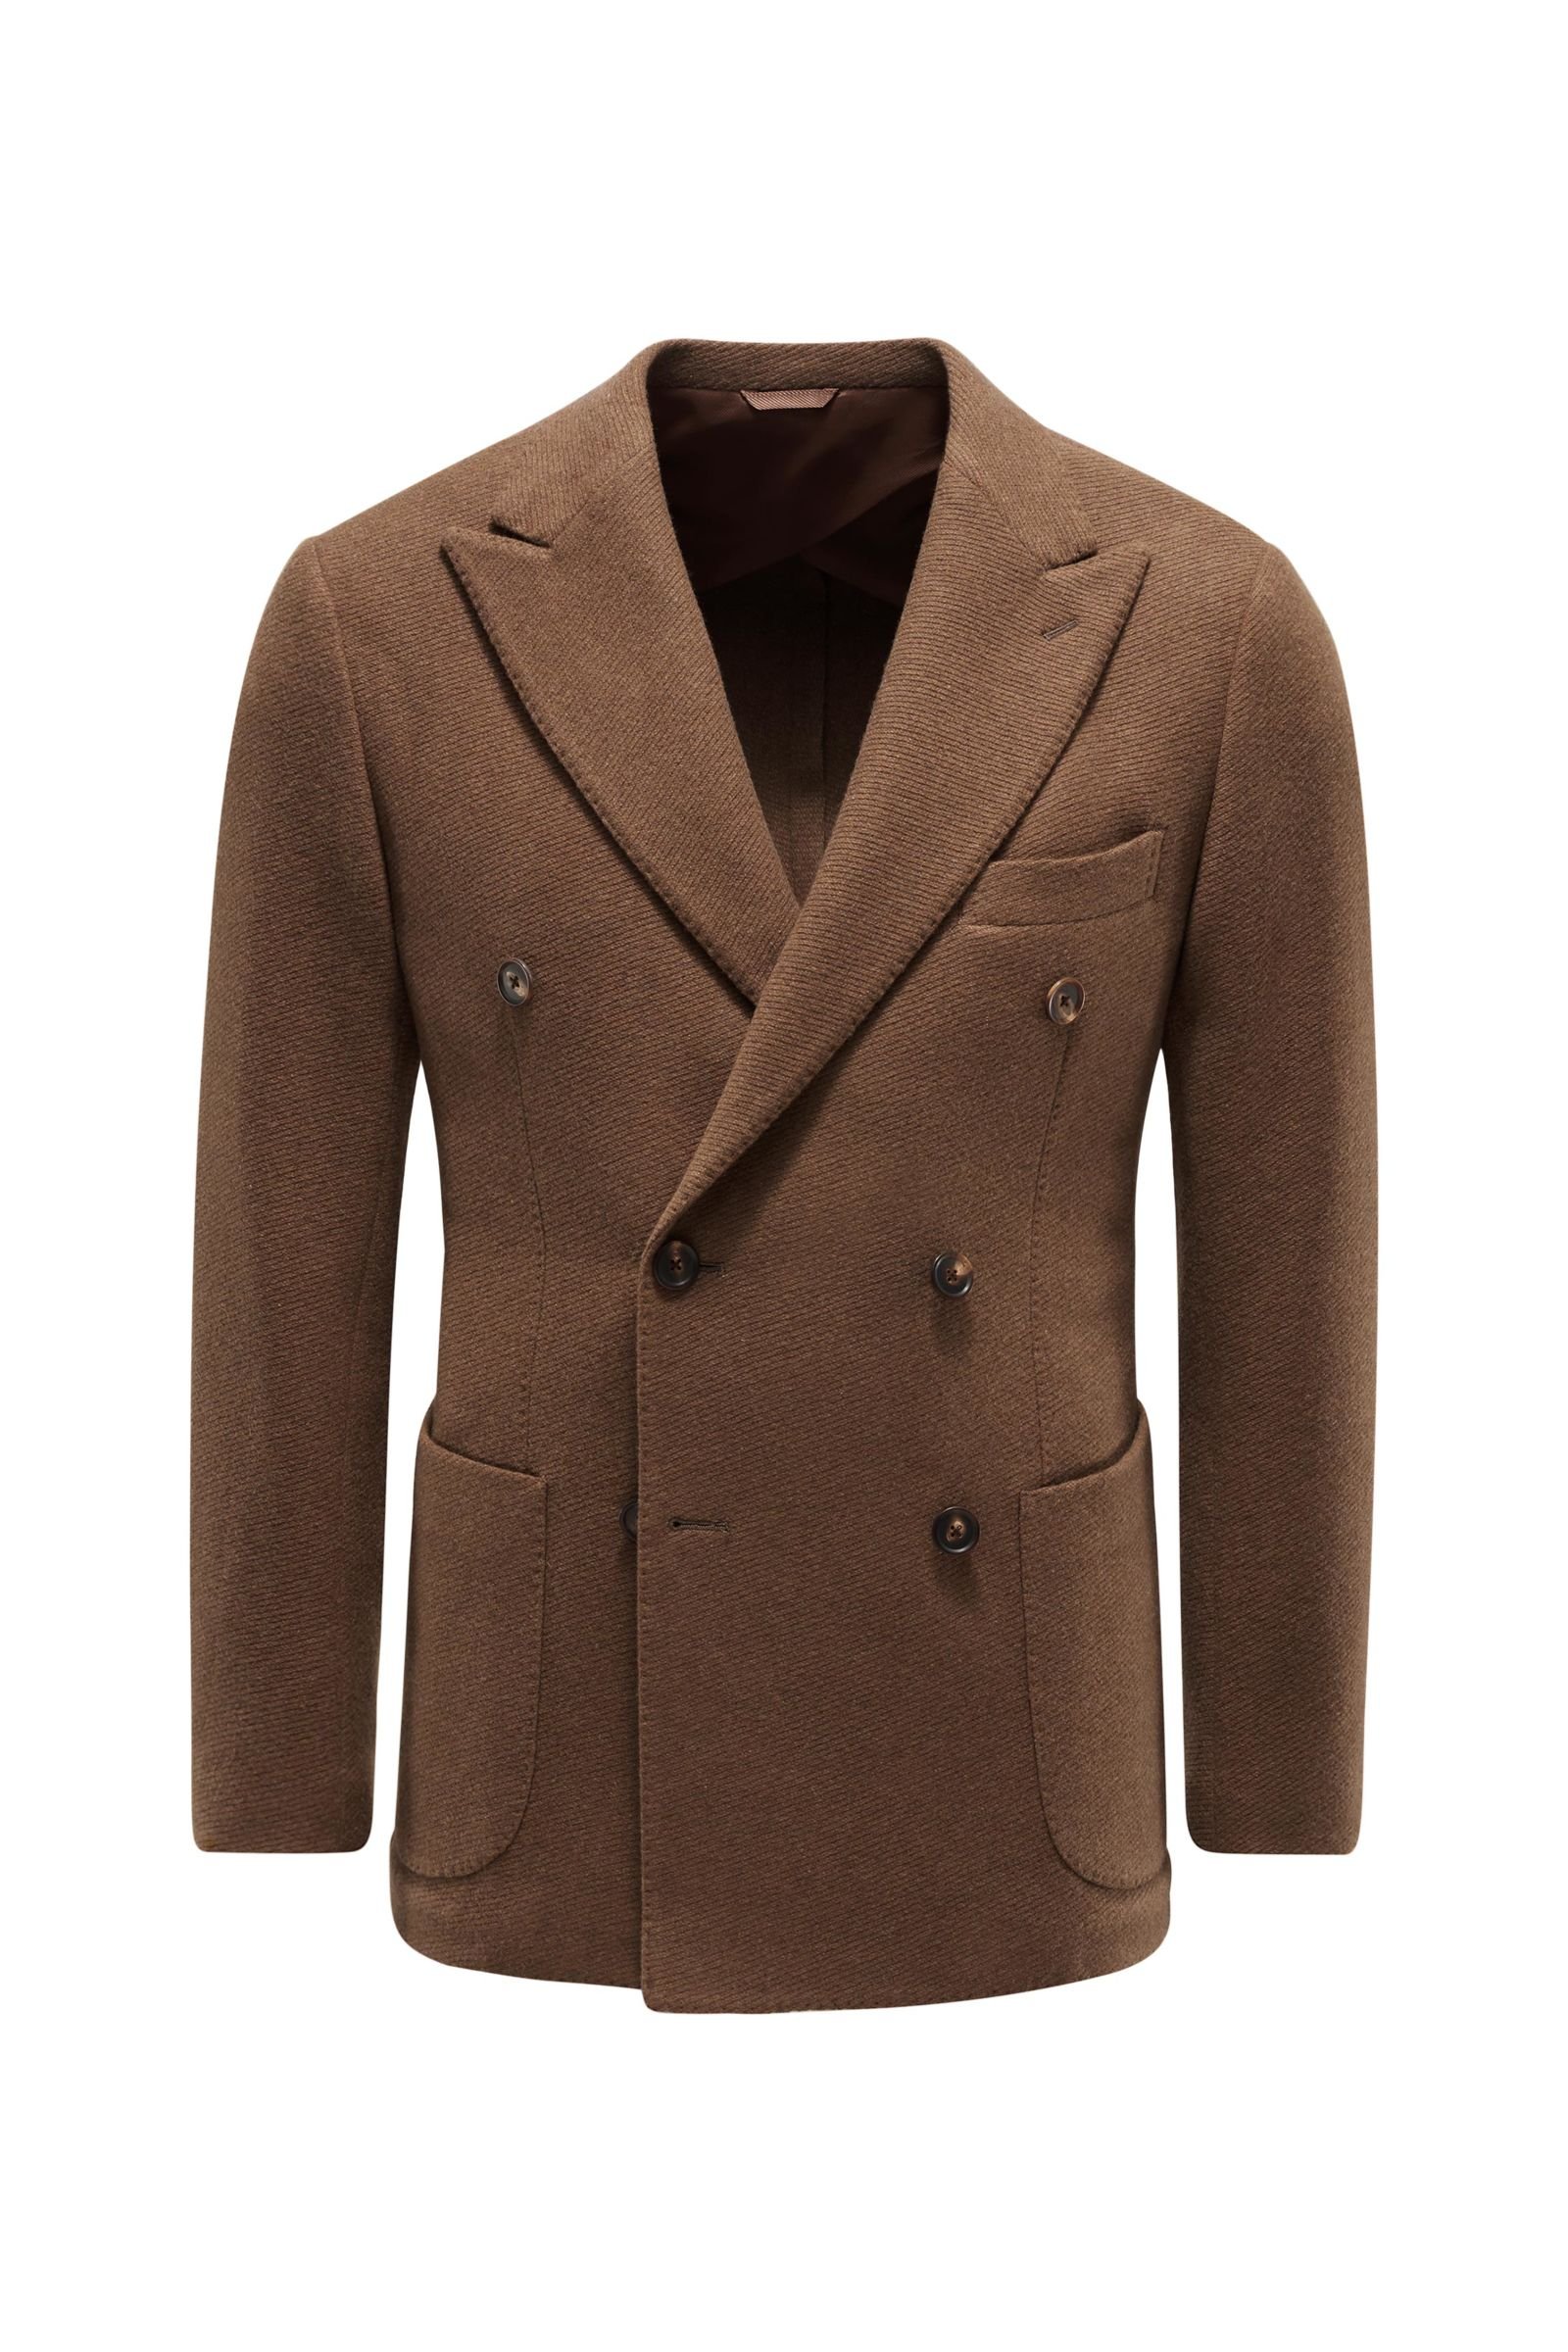 Cashmere smart-casual jacket 'Aariberto' light brown